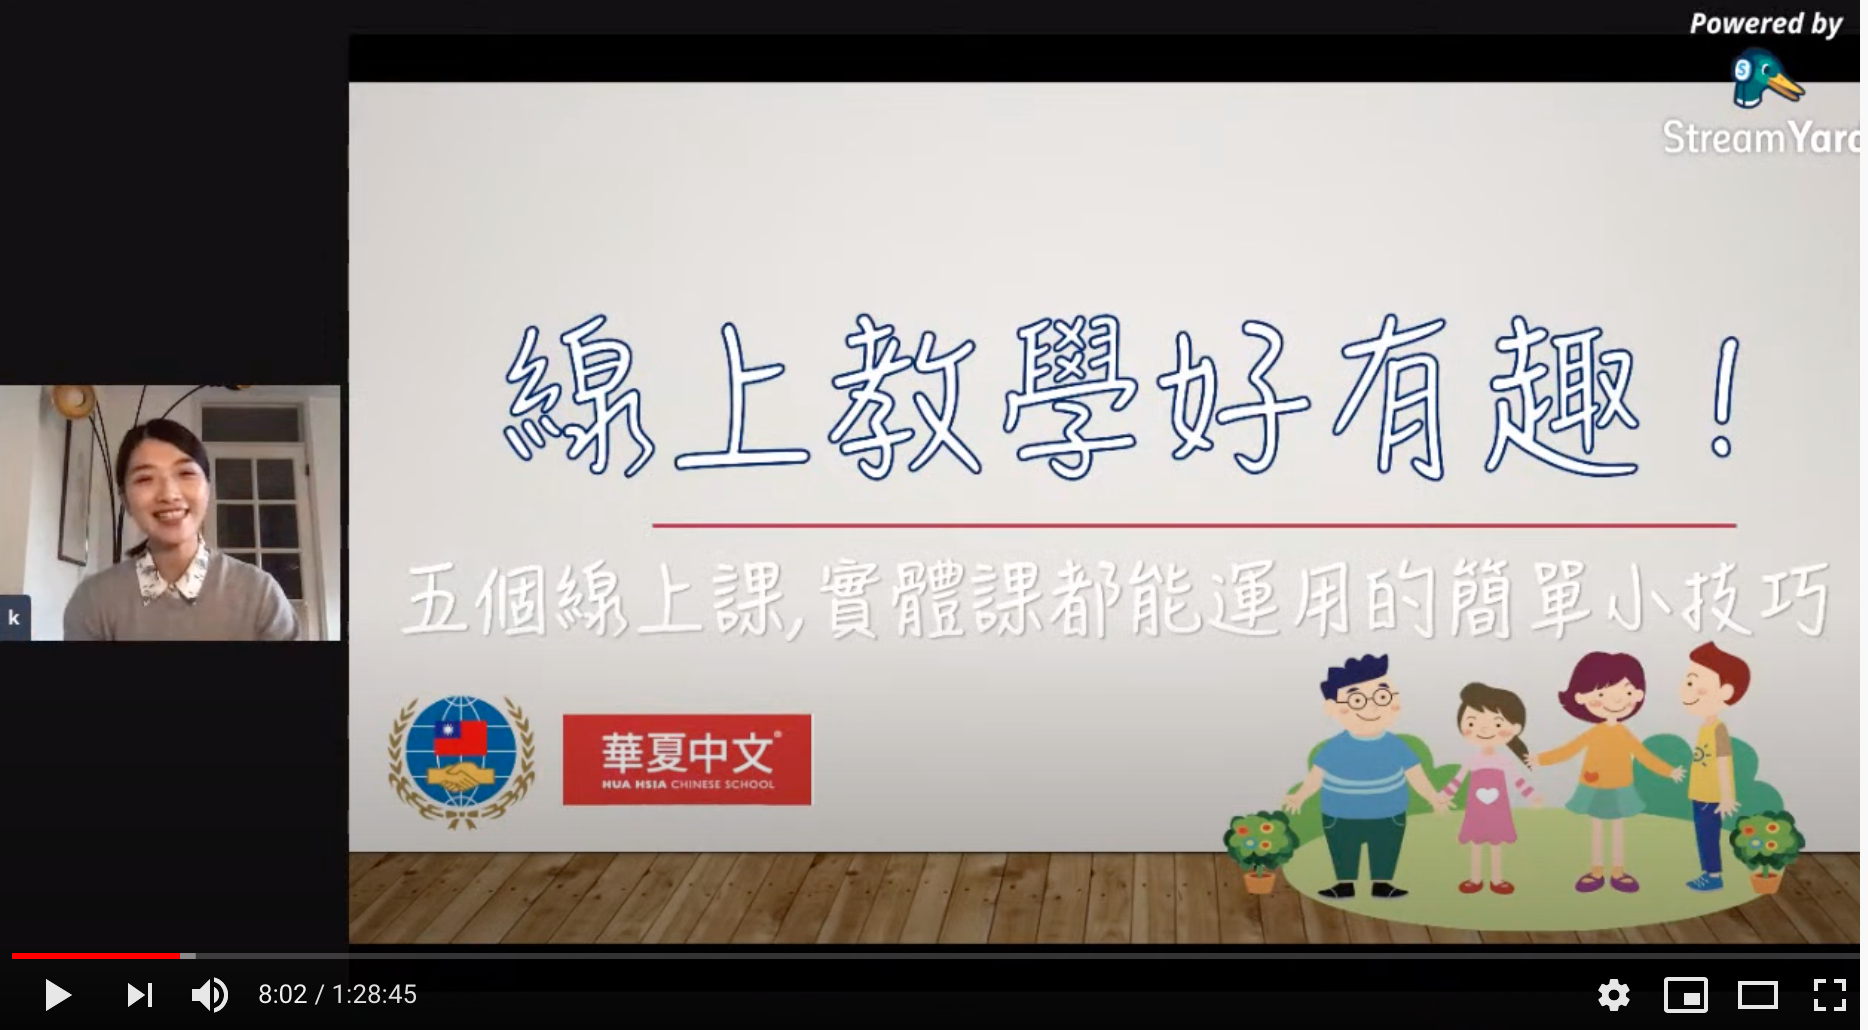 10月23日講座，由華夏中文學校Karen 老師分享「線上教學好有趣！五個線上課實體課都能運用的簡單小技巧」主題。